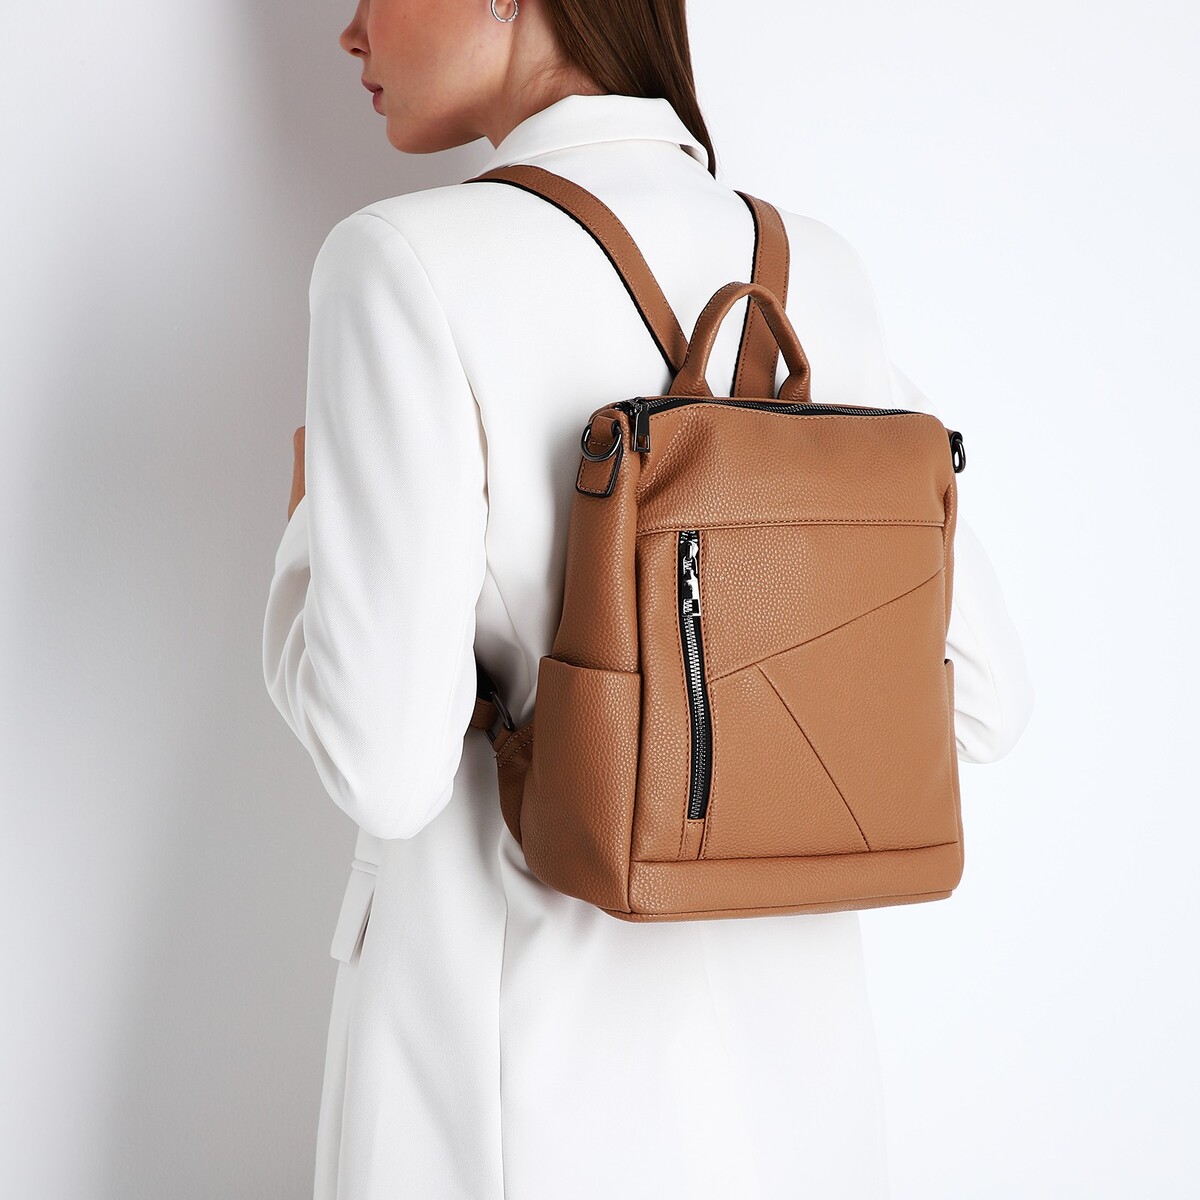 Рюкзак женский из искусственной кожи на молнии, 4 кармана, цвет коричневый рюкзак городской из искусственной кожи на молнии 3 кармана